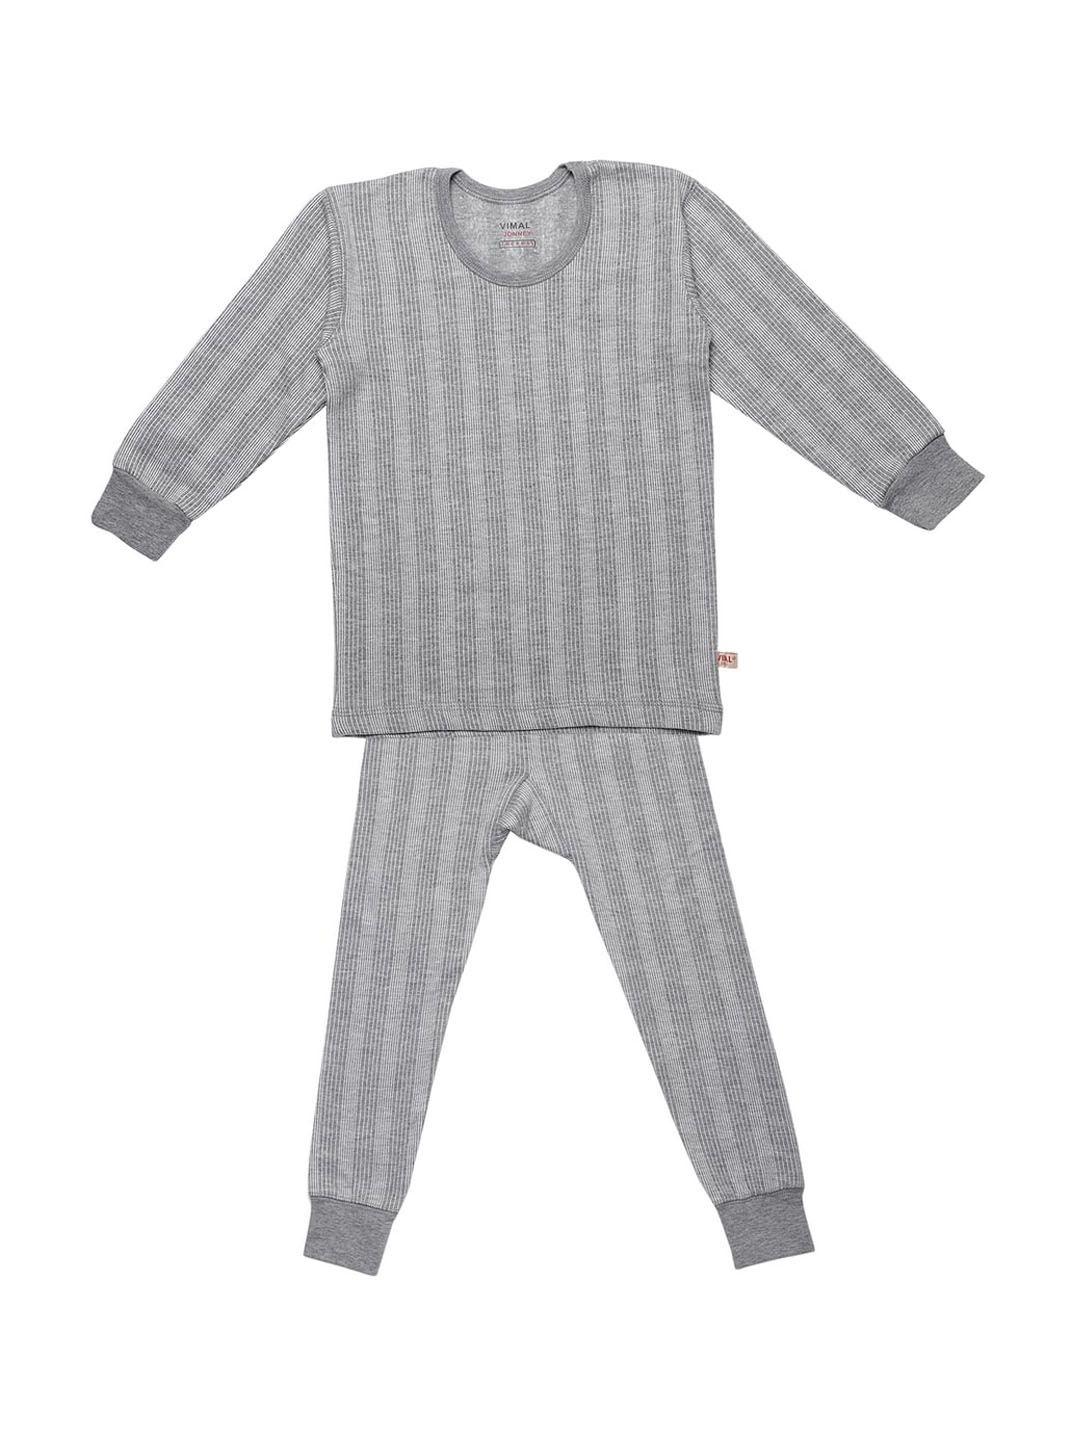 vimal jonney kids grey melange striped thermal set